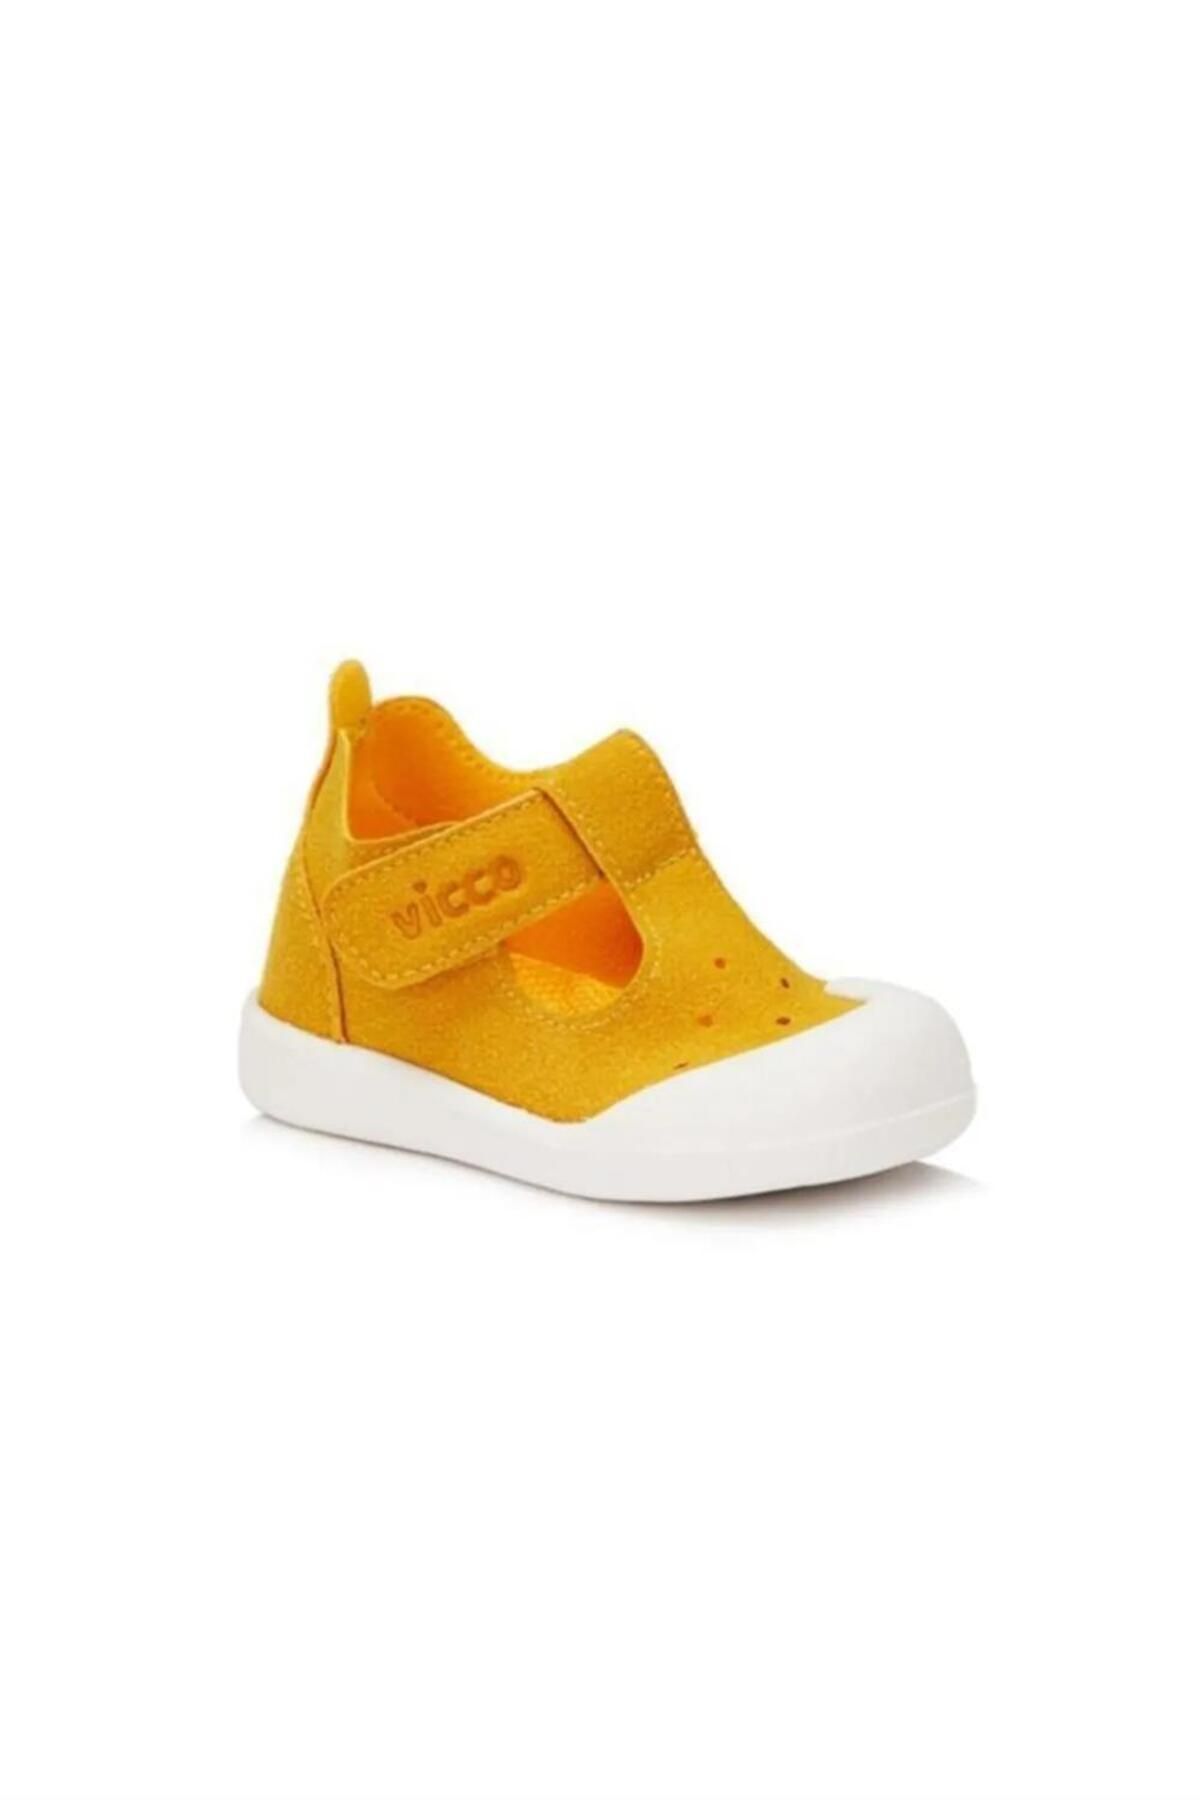 Vicco Loro Sarı Ilk Adım Yürüyüş Ayakkabı